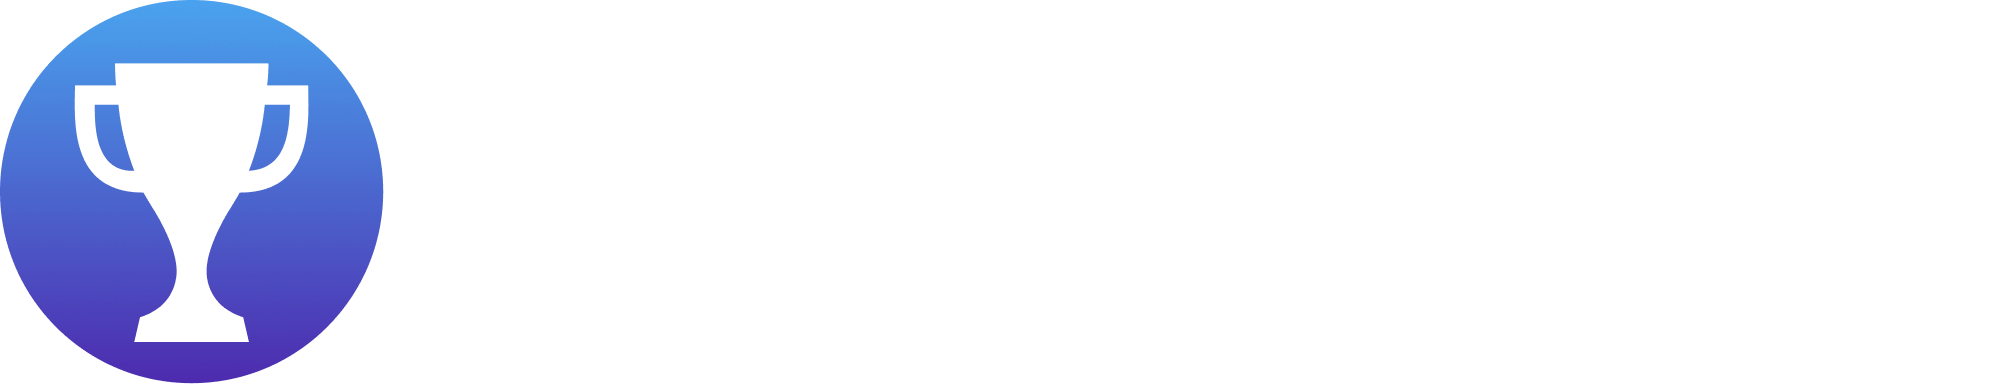 iGaming Awards Club logo